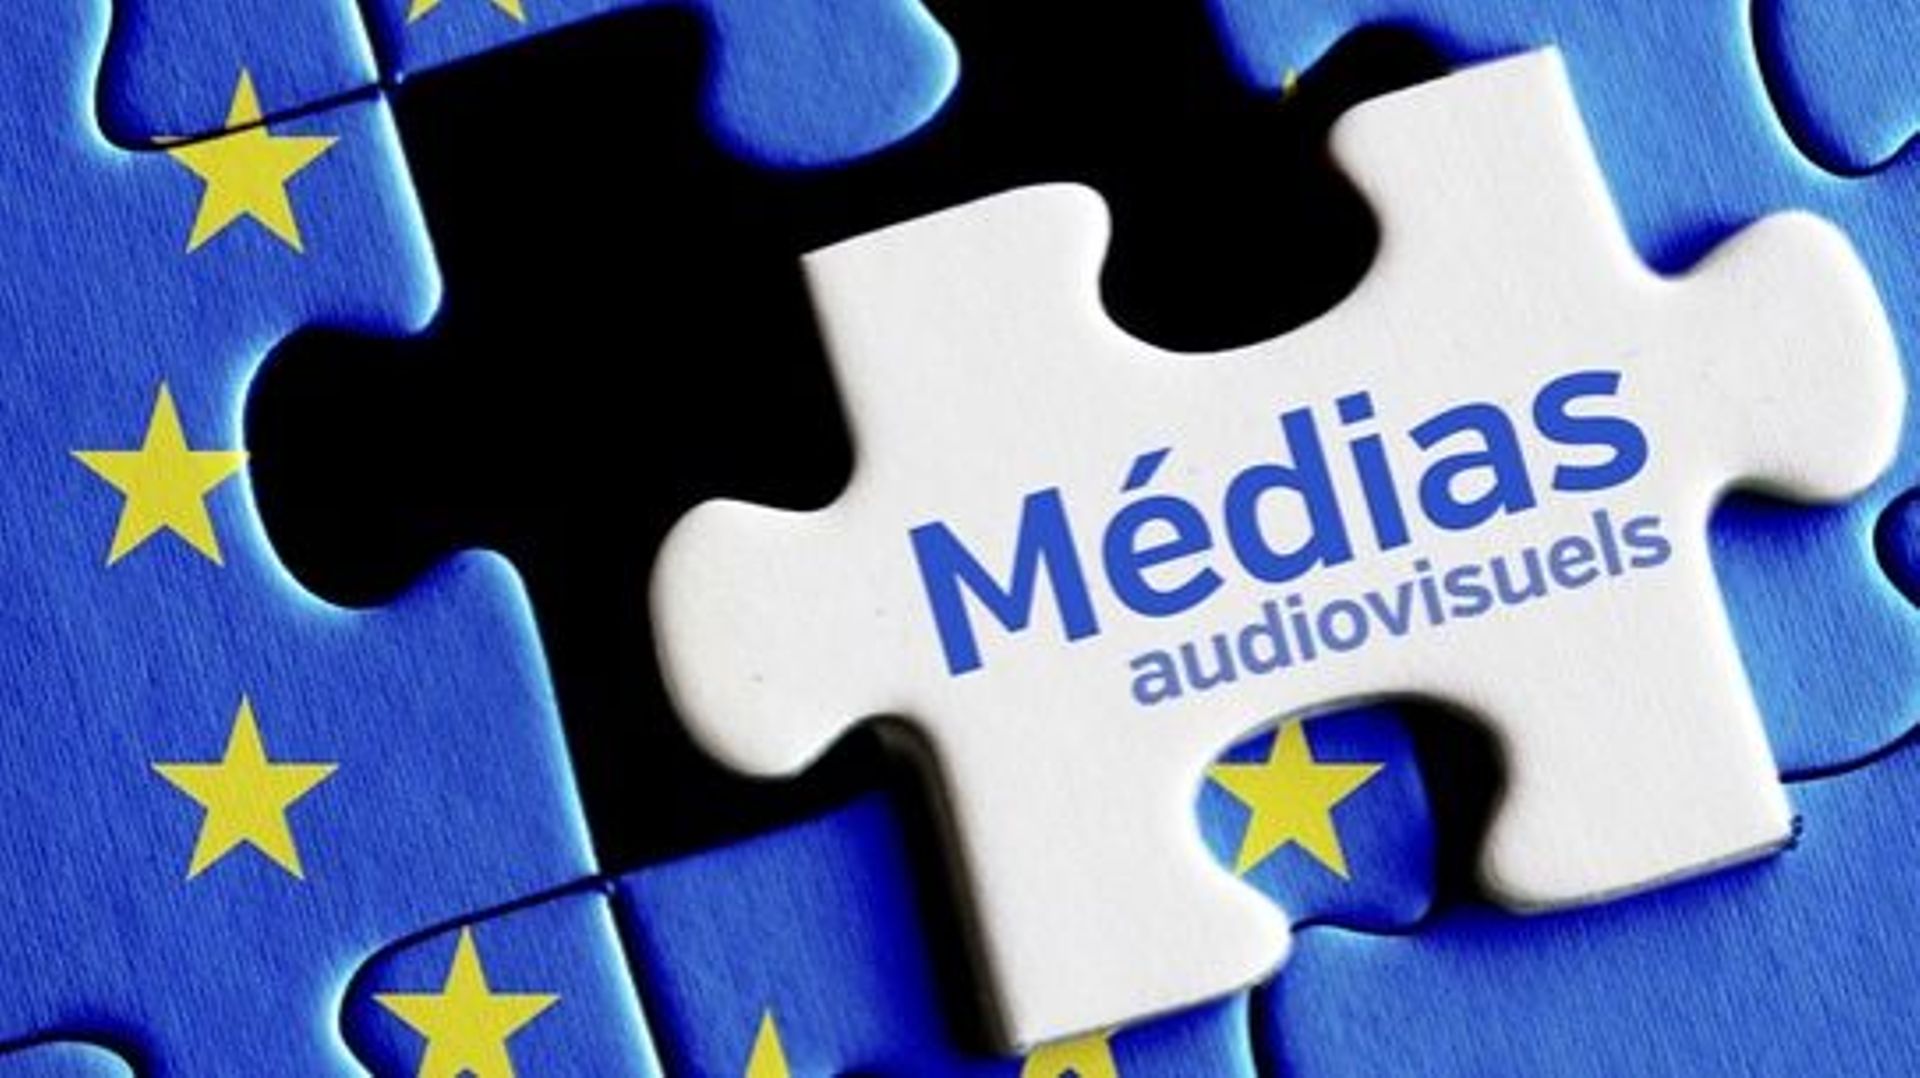 Nouvelles directives SMA (Services de médias audiovisuels), mais de quoi s'agit-il ?